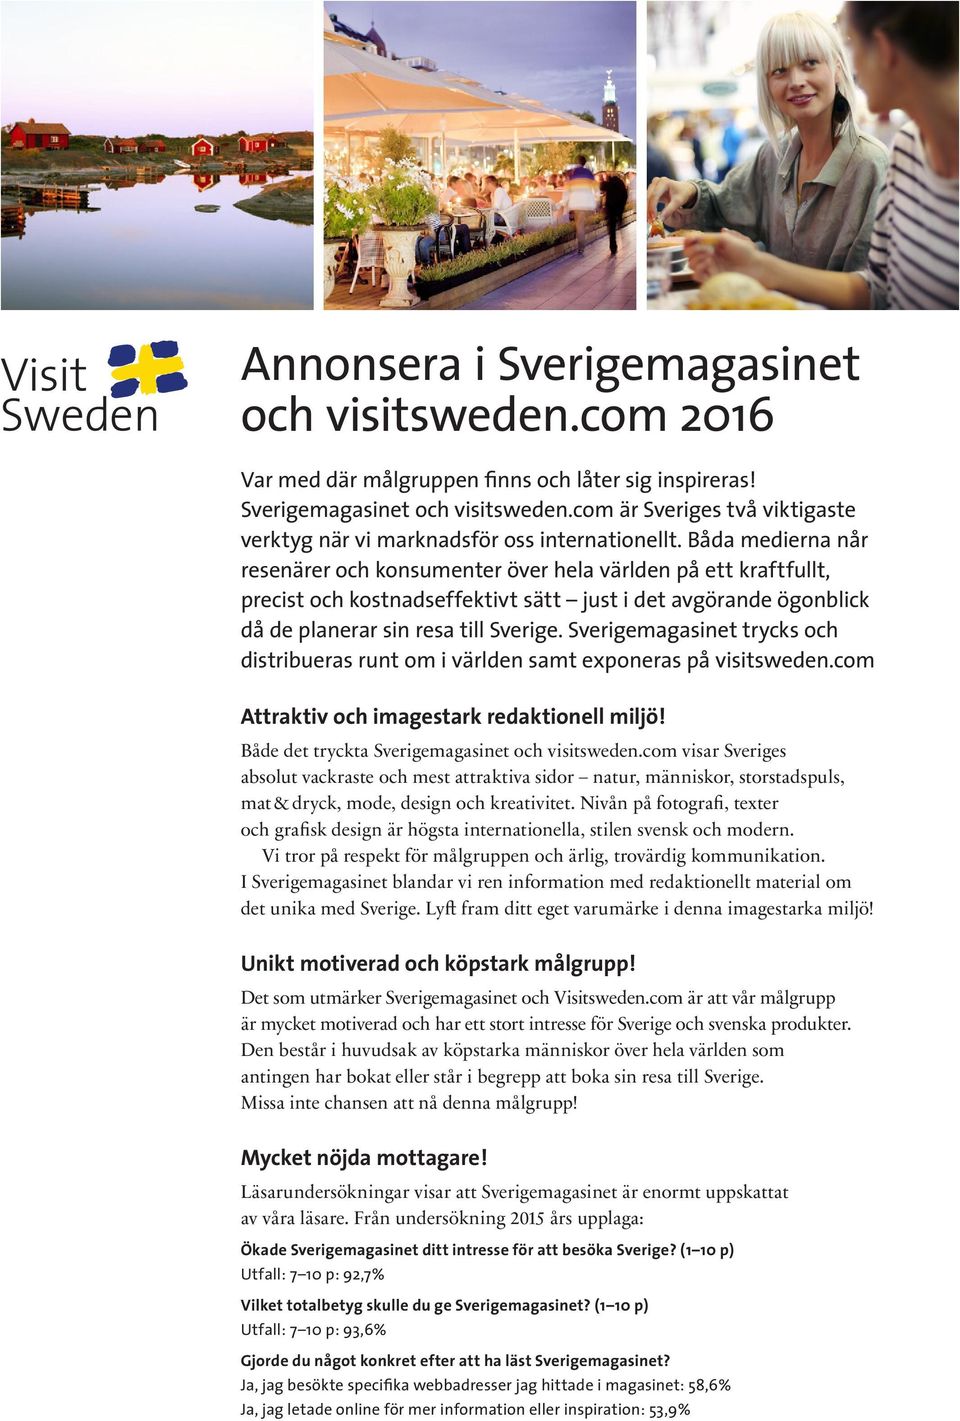 Sverigemagasinet trycks och distribueras runt om i världen samt exponeras på visitsweden.com Attraktiv och imagestark redaktionell miljö! Både det tryckta Sverigemagasinet och visitsweden.